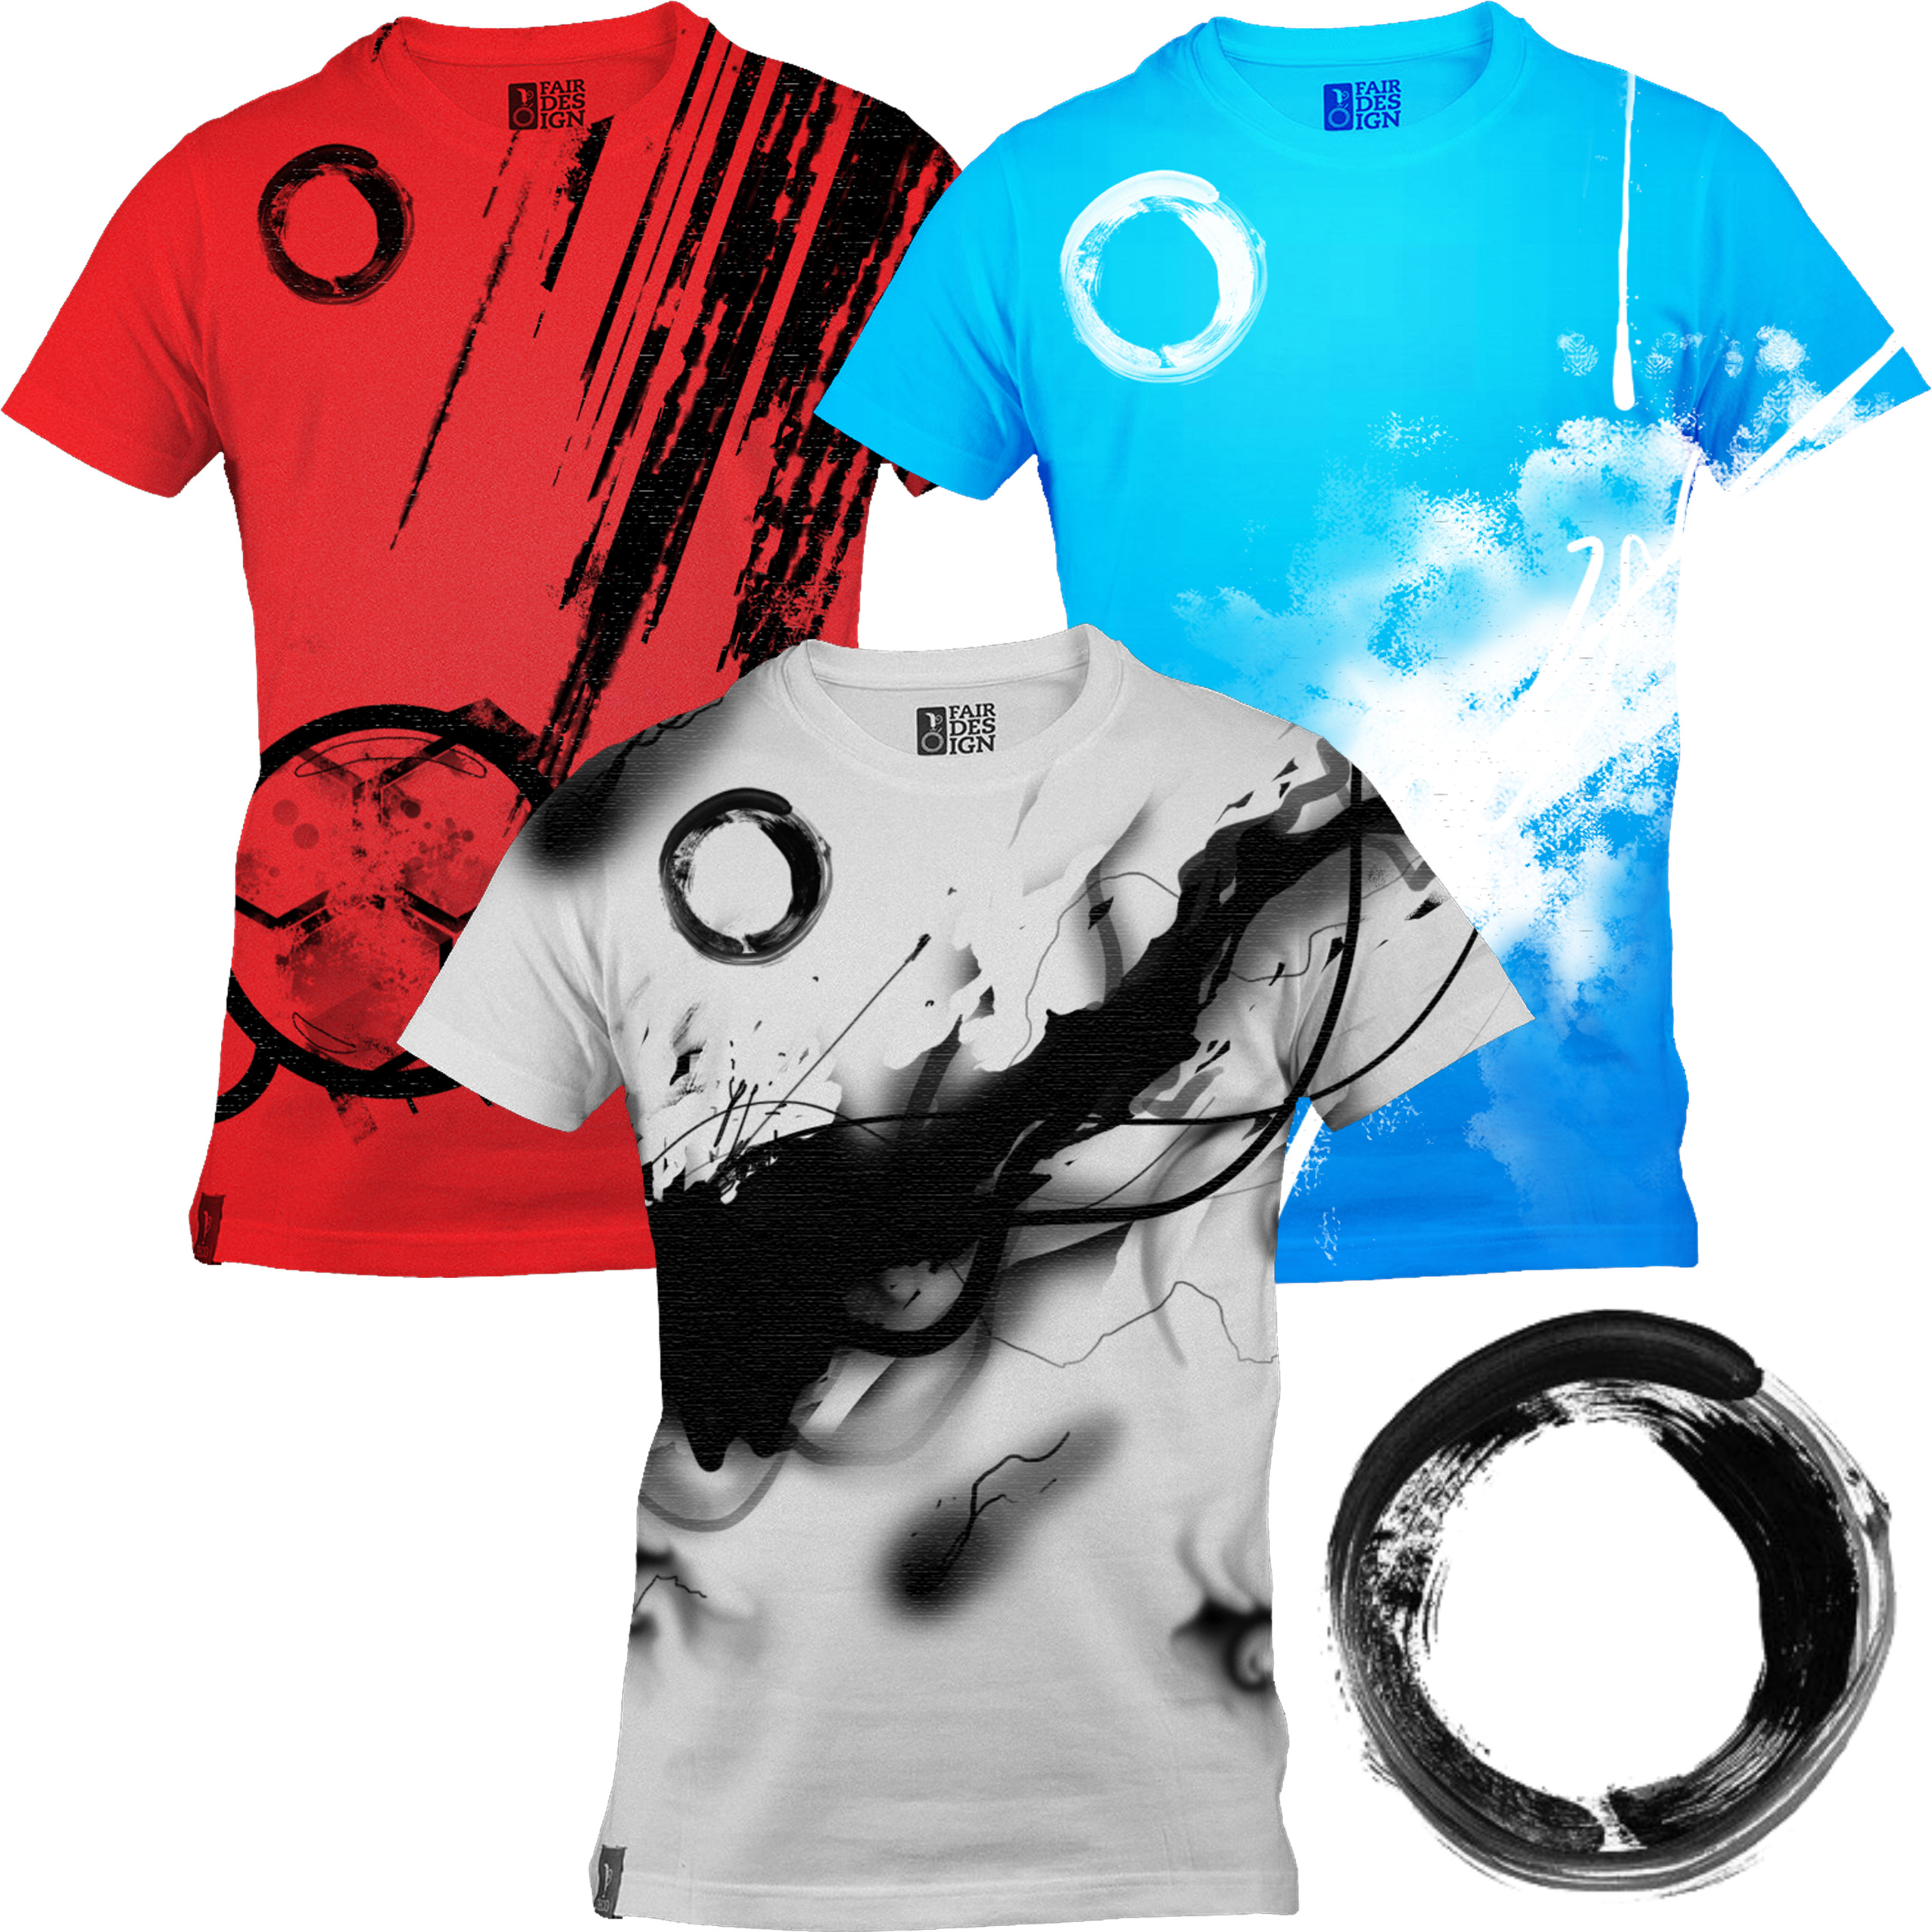 Abstract T-shirts